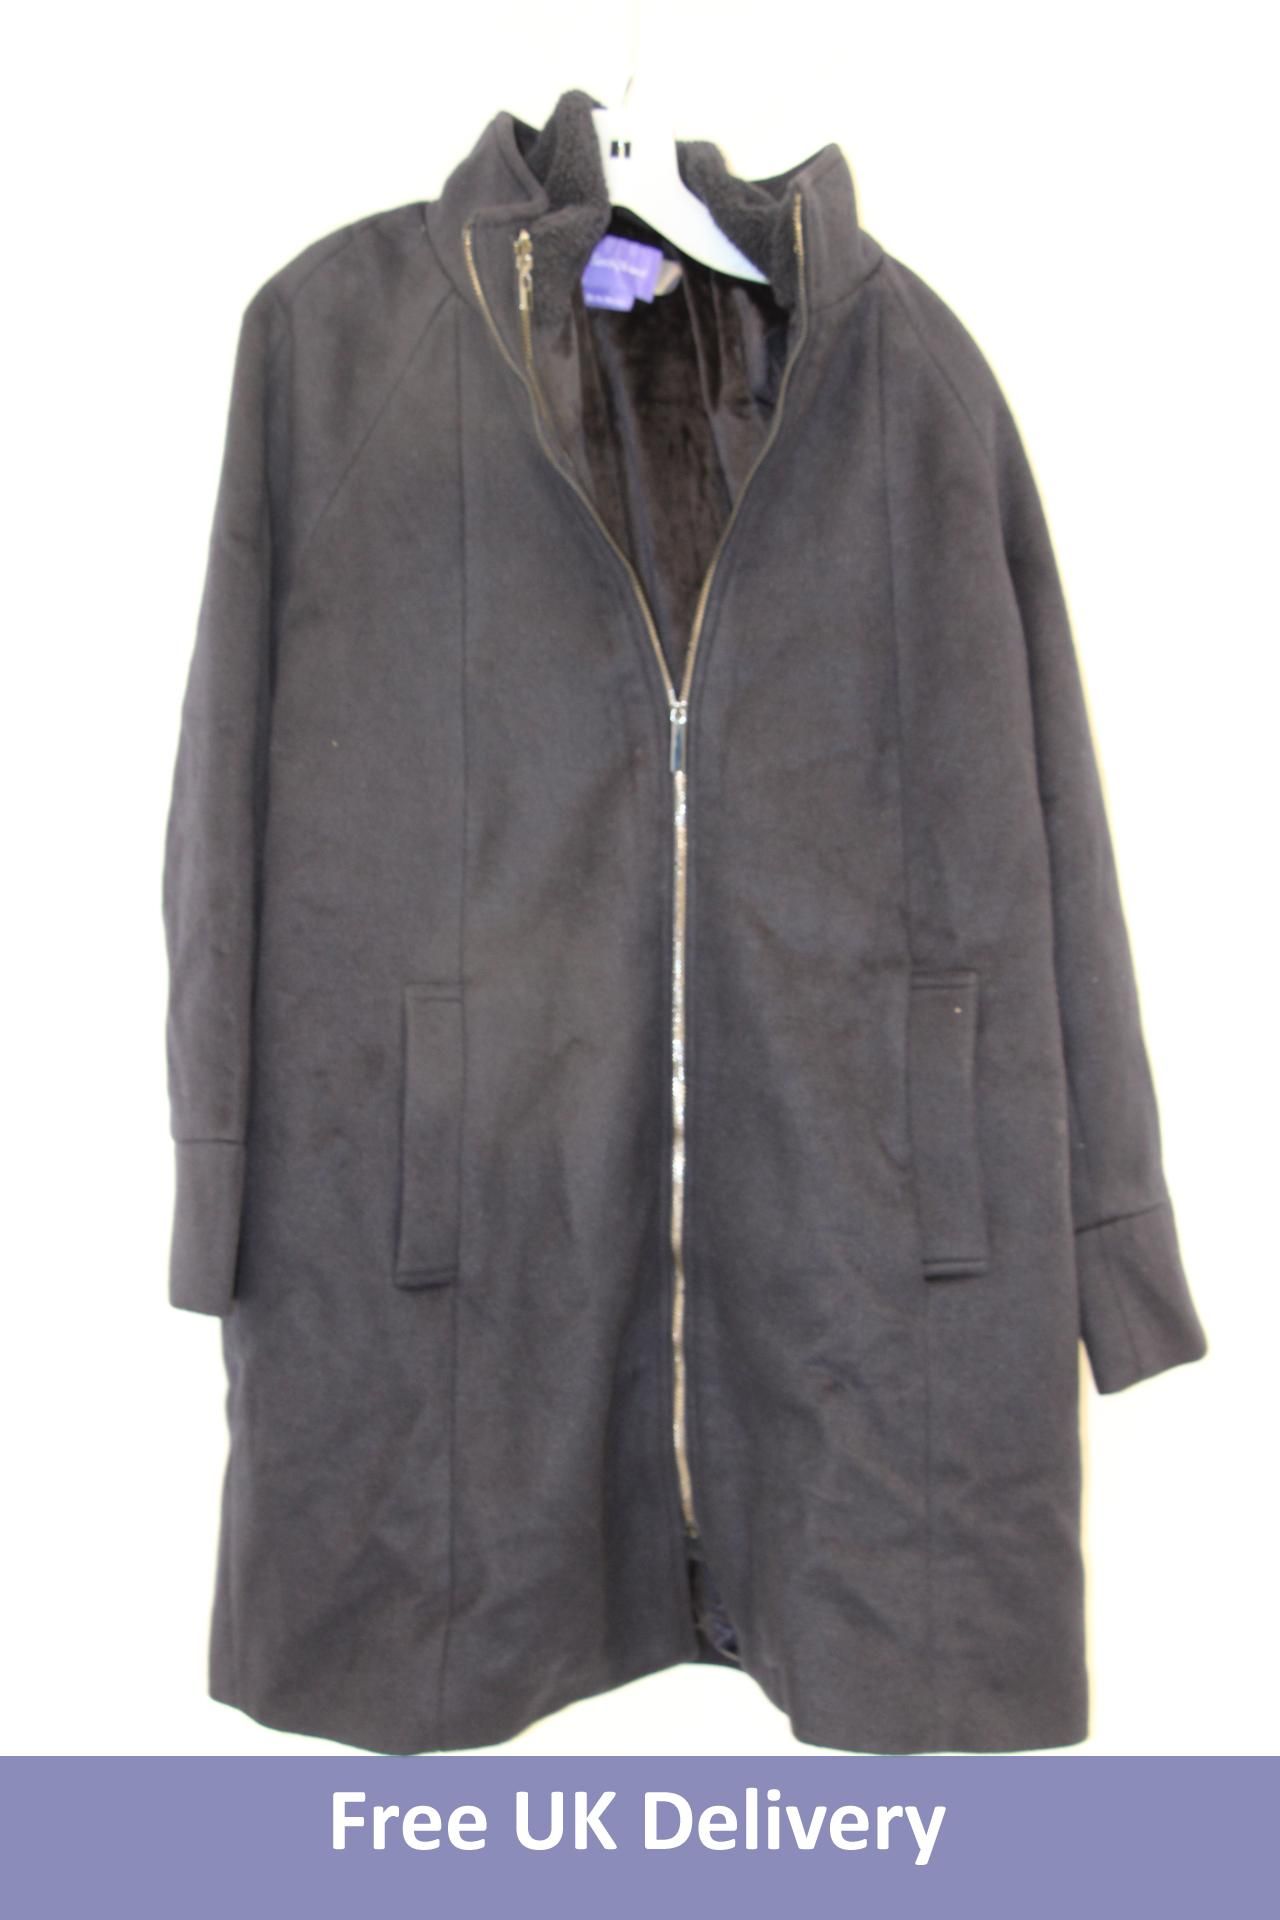 Seraphine 6 In 1 Baby Wearing Coat with Zip Off Kanagaroo Panel, Black, Size UK 8